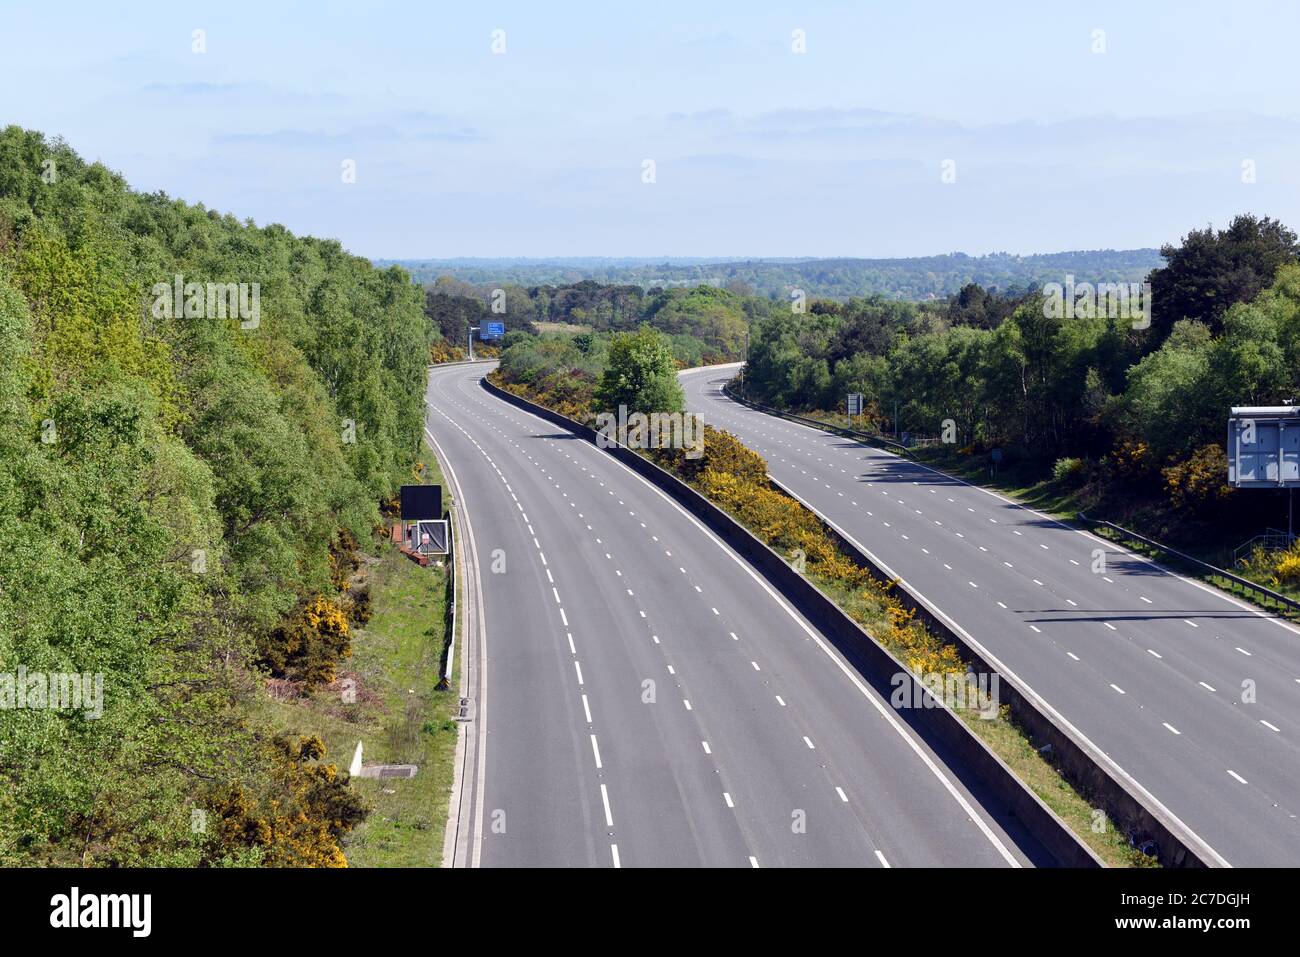 Camberley, Surrey, Angleterre - 25 avril 2020 : l'autoroute M3 de Surrey est vide pendant le premier confinement de Covid-19 Banque D'Images